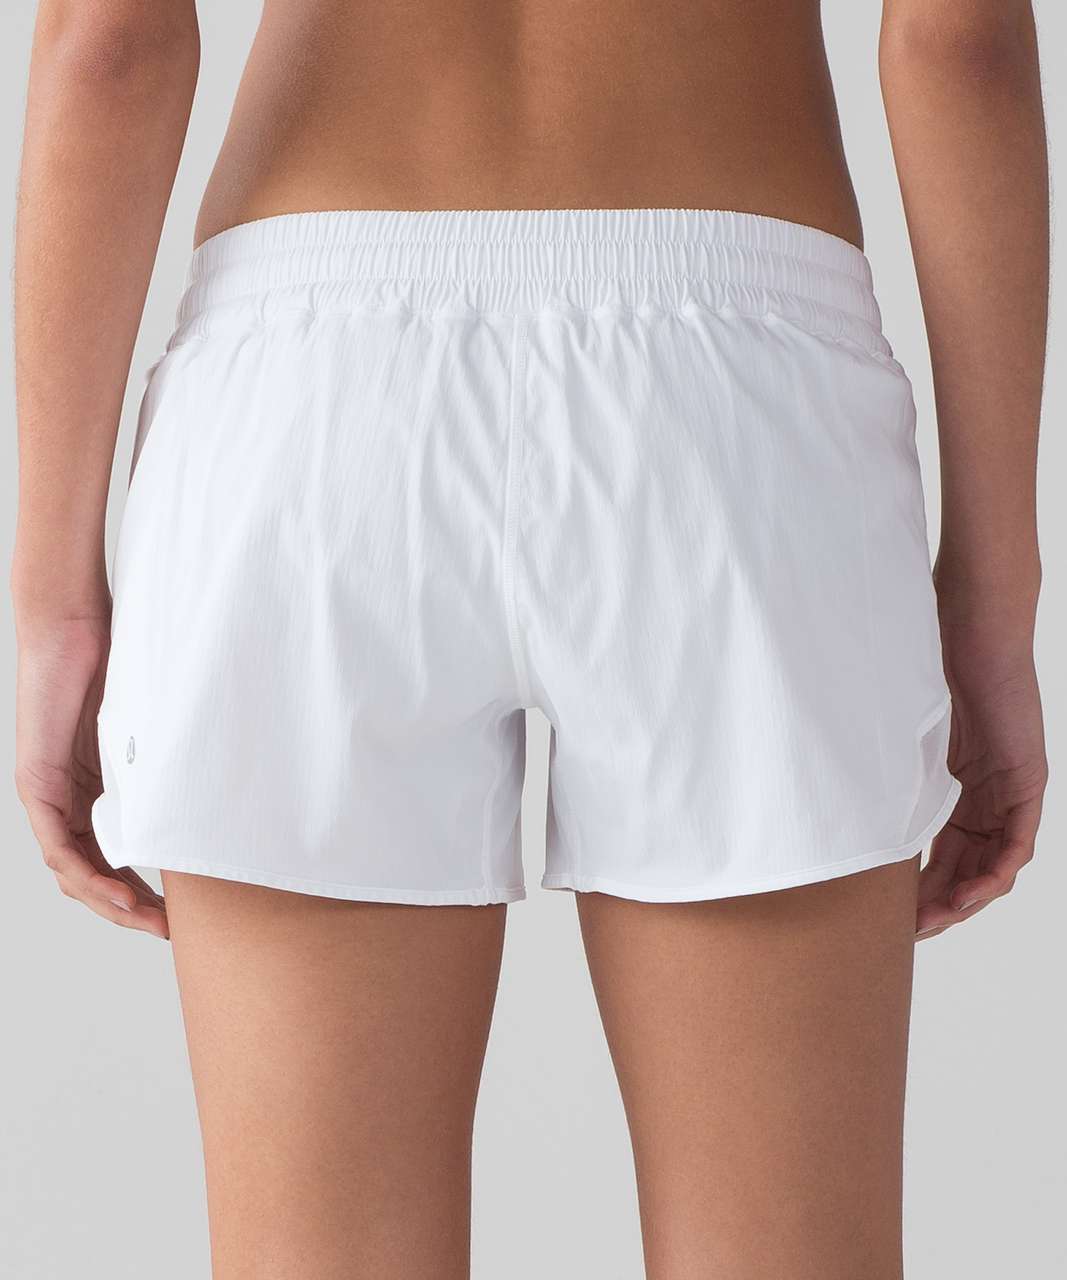 lululemon hotty hot shorts size 4